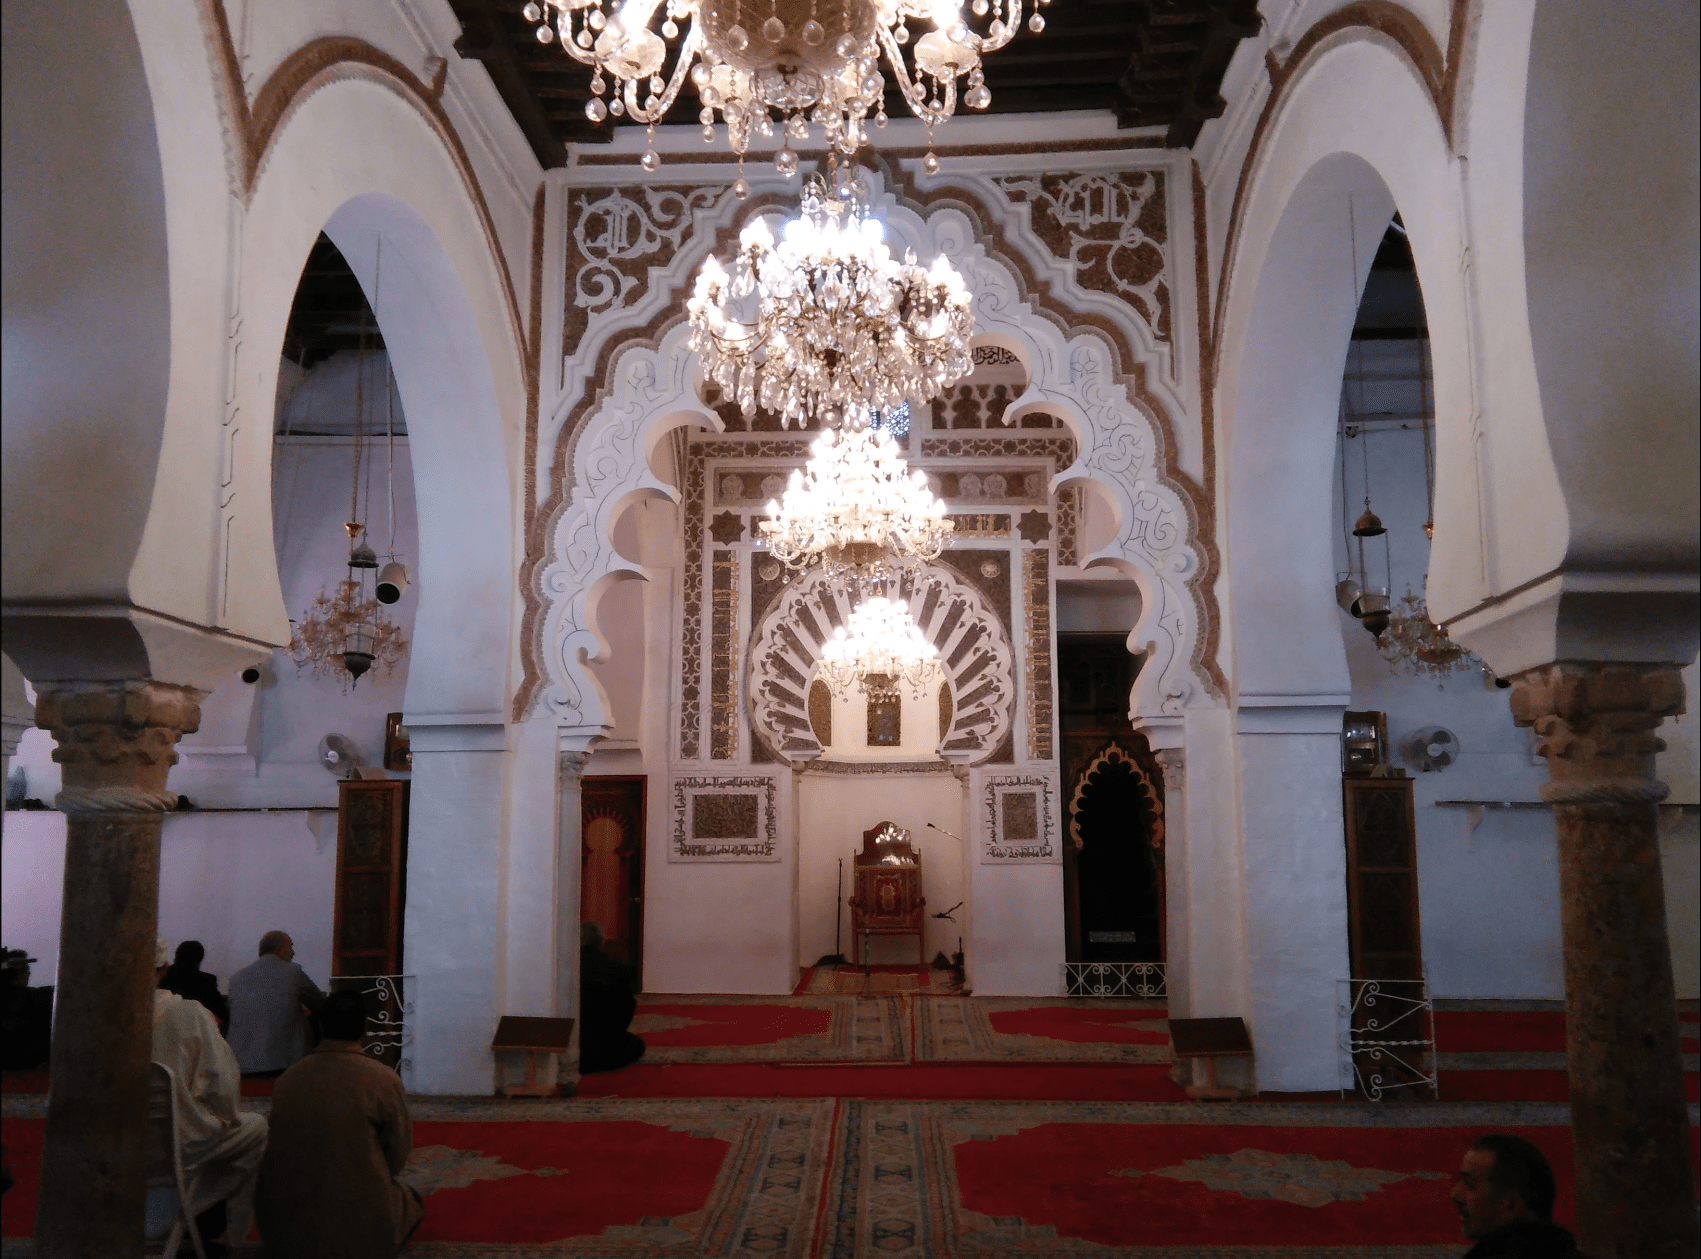 Great Mosque of Tlemcen